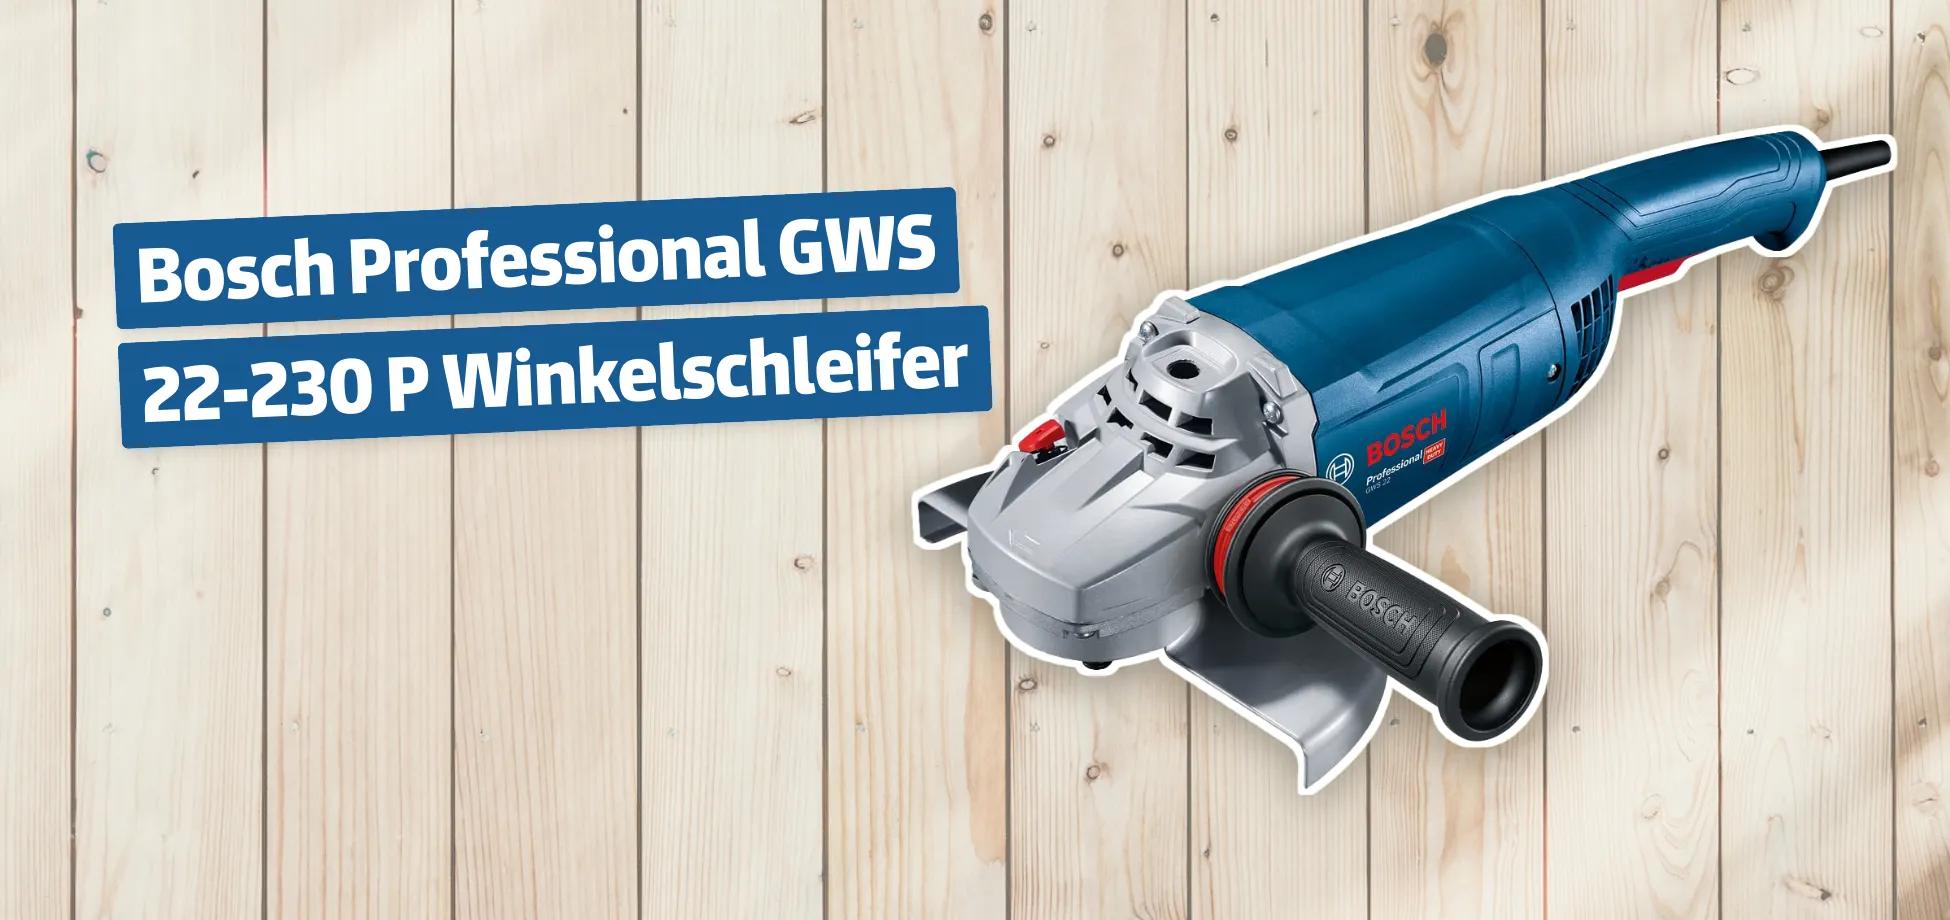 Bosch Professional GWS 22-230 P Winkelschleifer